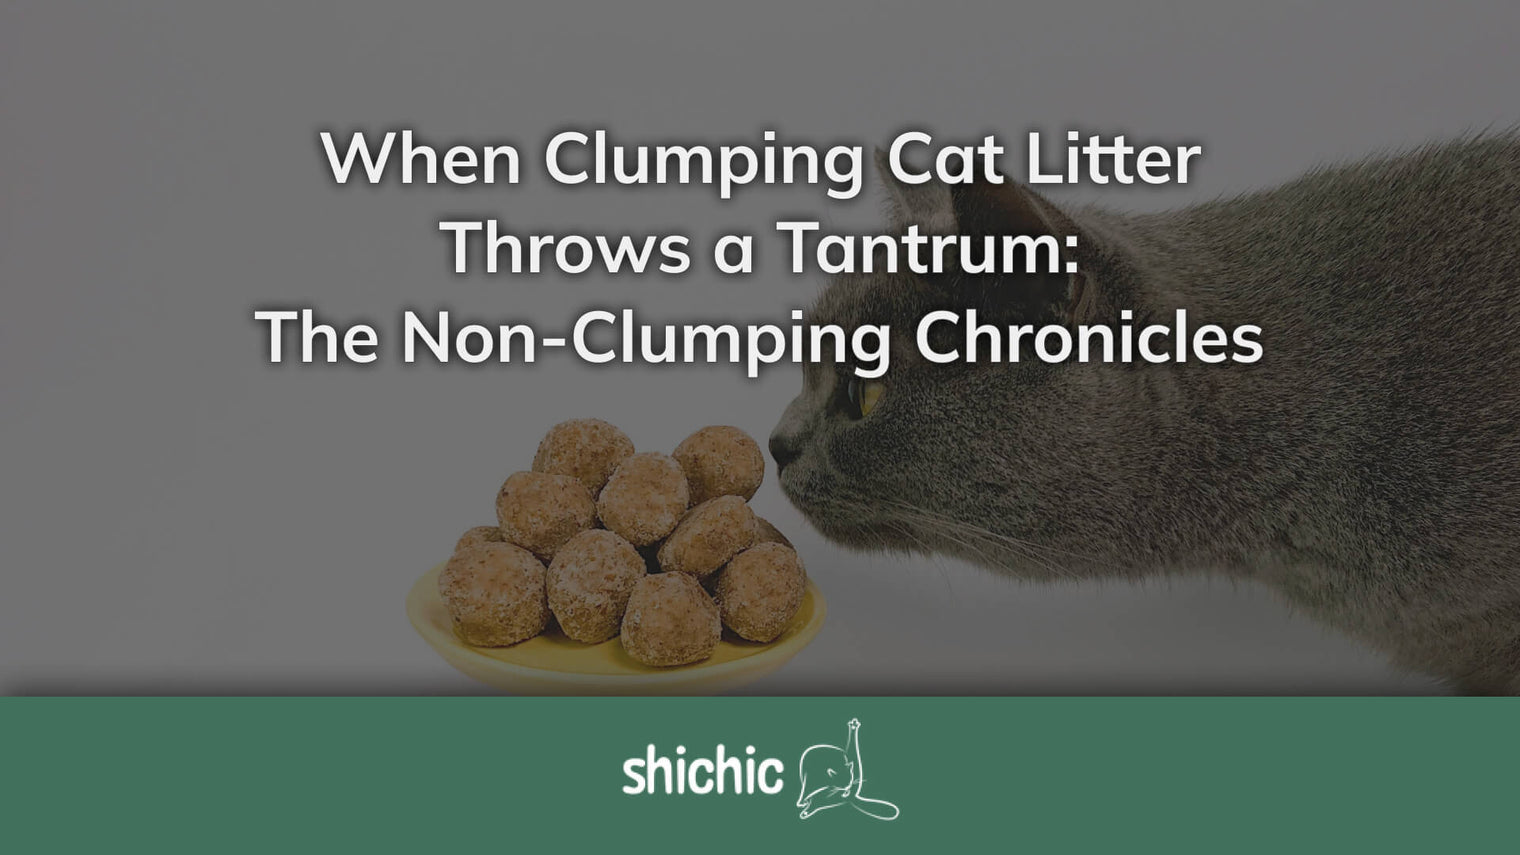 clumping cat litter not clumping